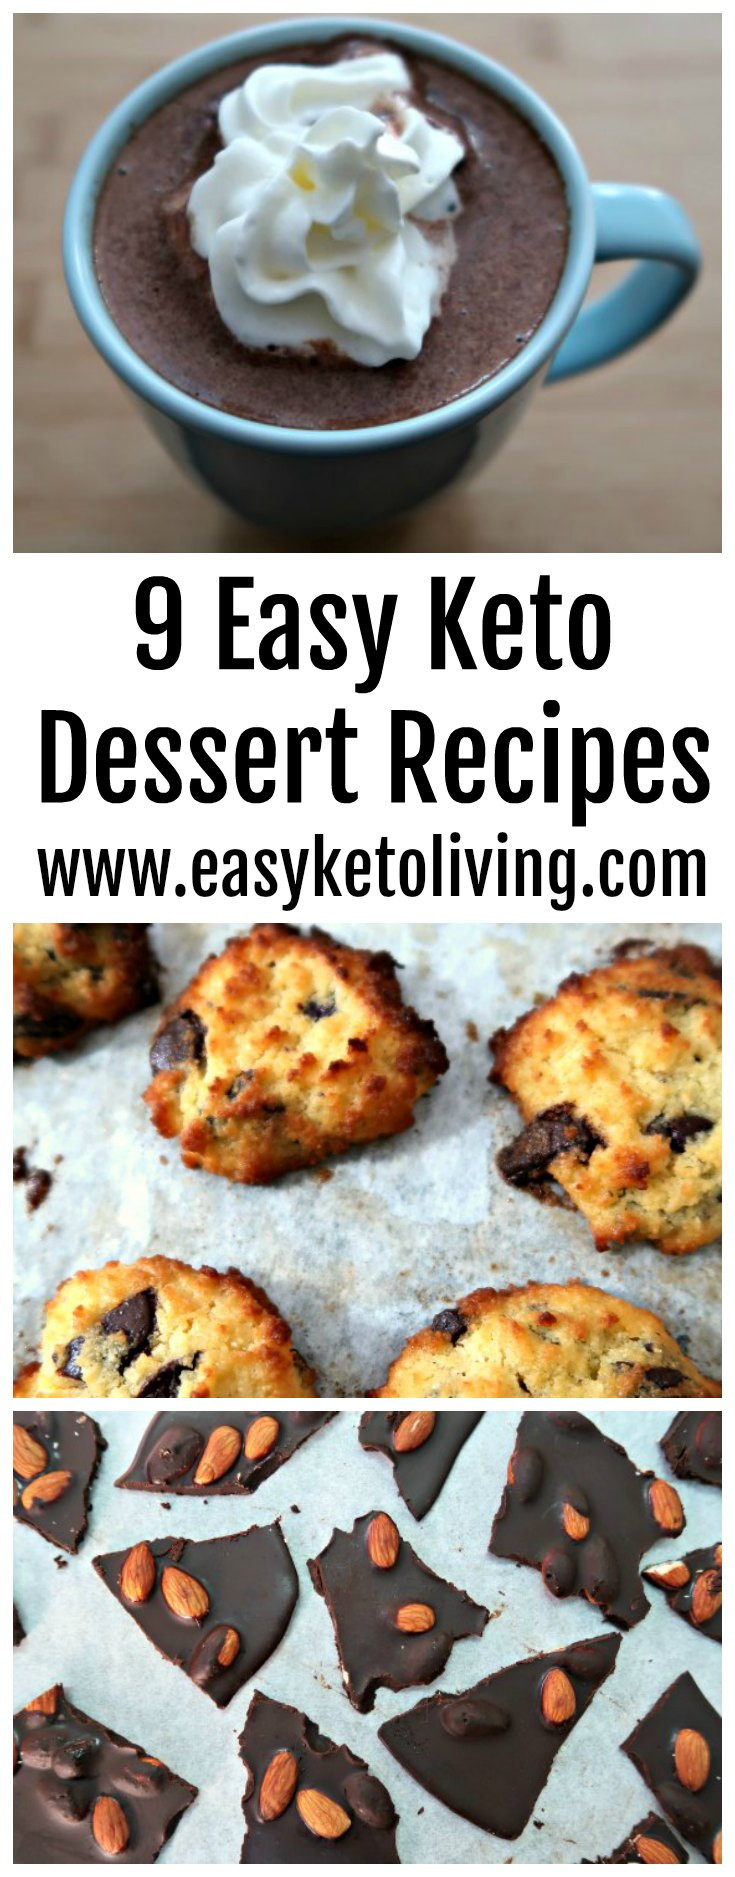 Low Carb Dessert Recipes Easy
 9 Easy Keto Dessert Recipes Quick Low Carb Ketogenic